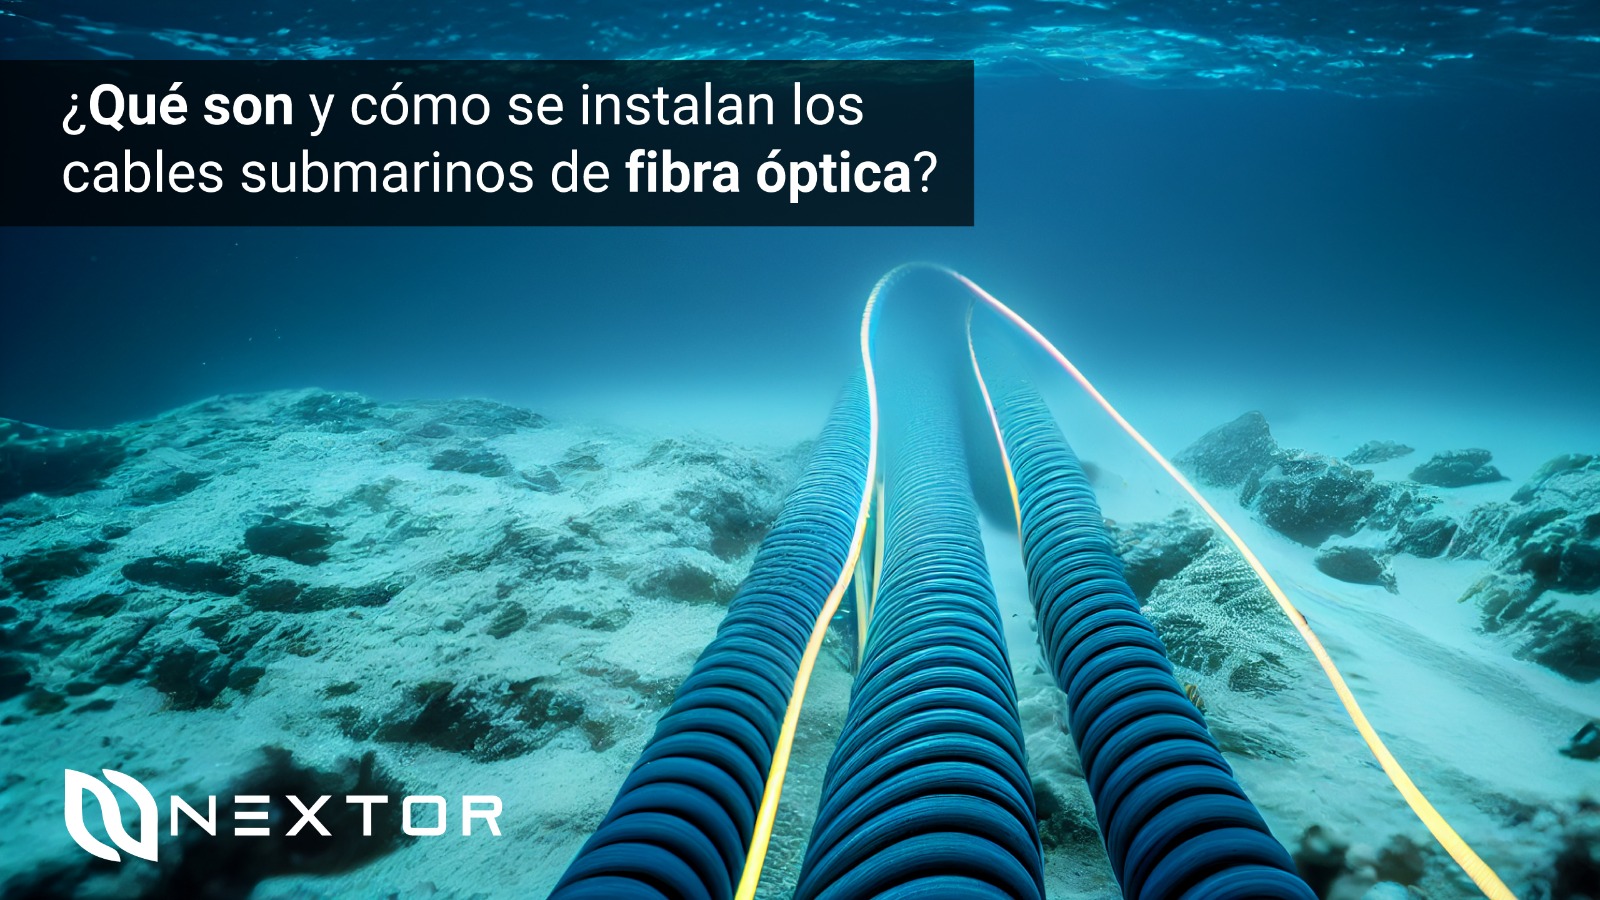 Qué son y cómo se instalan cables submarinos de fibra óptica